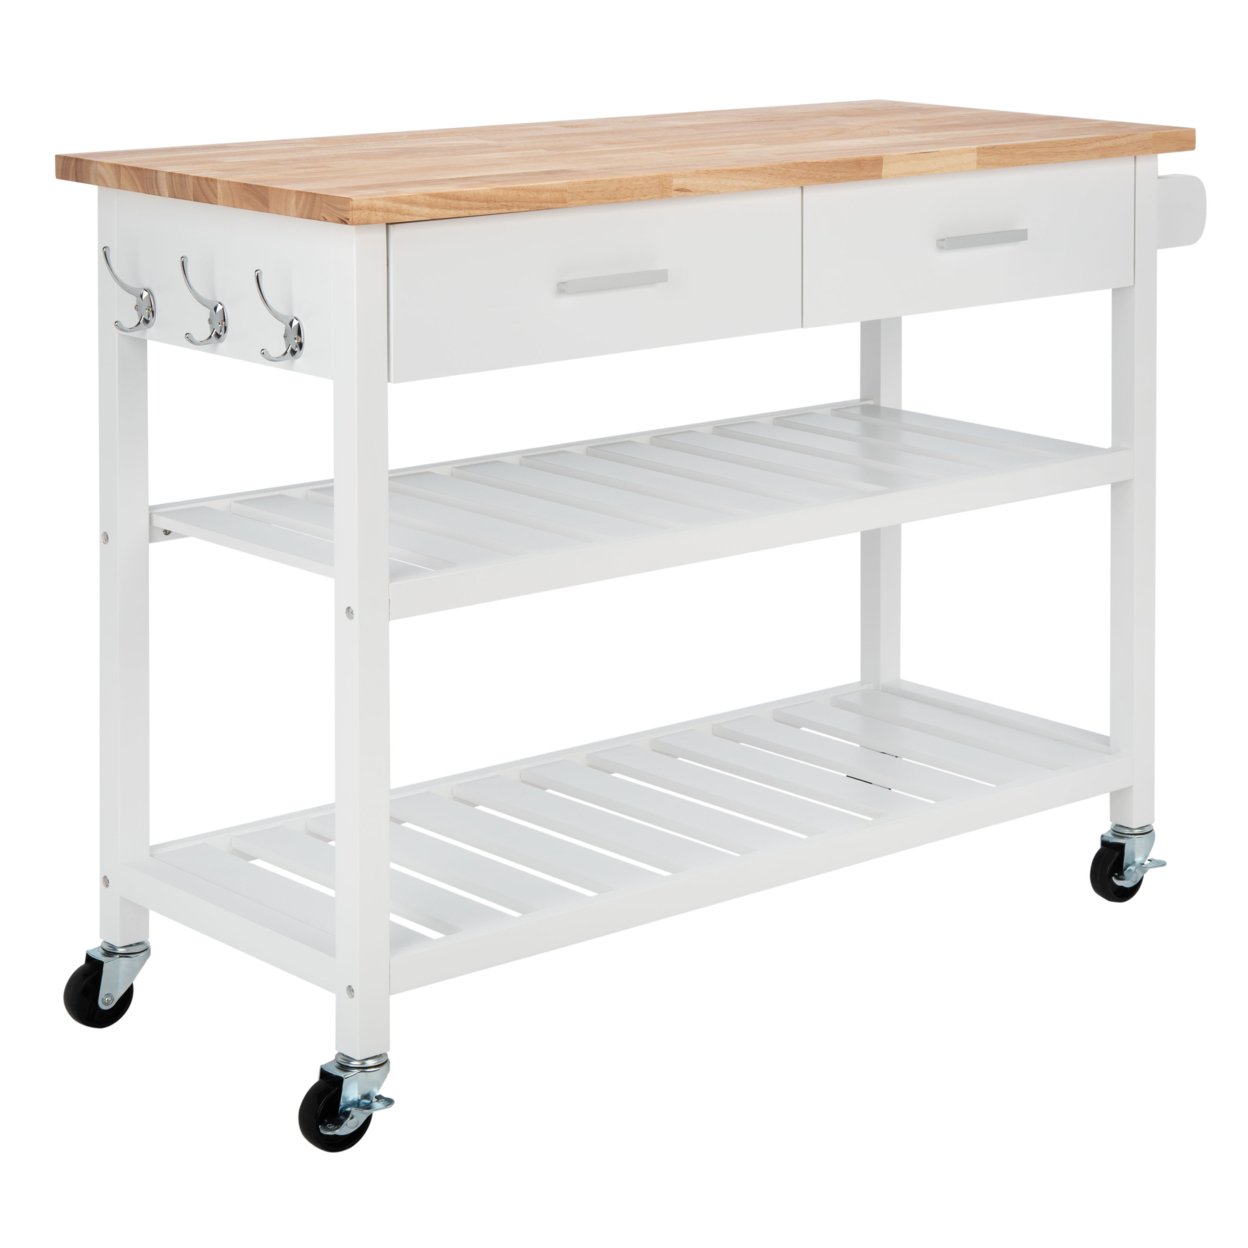 SAFAVIEH Kiko 2-Drawer 2-Shelf Kitchen Cart White / Natural